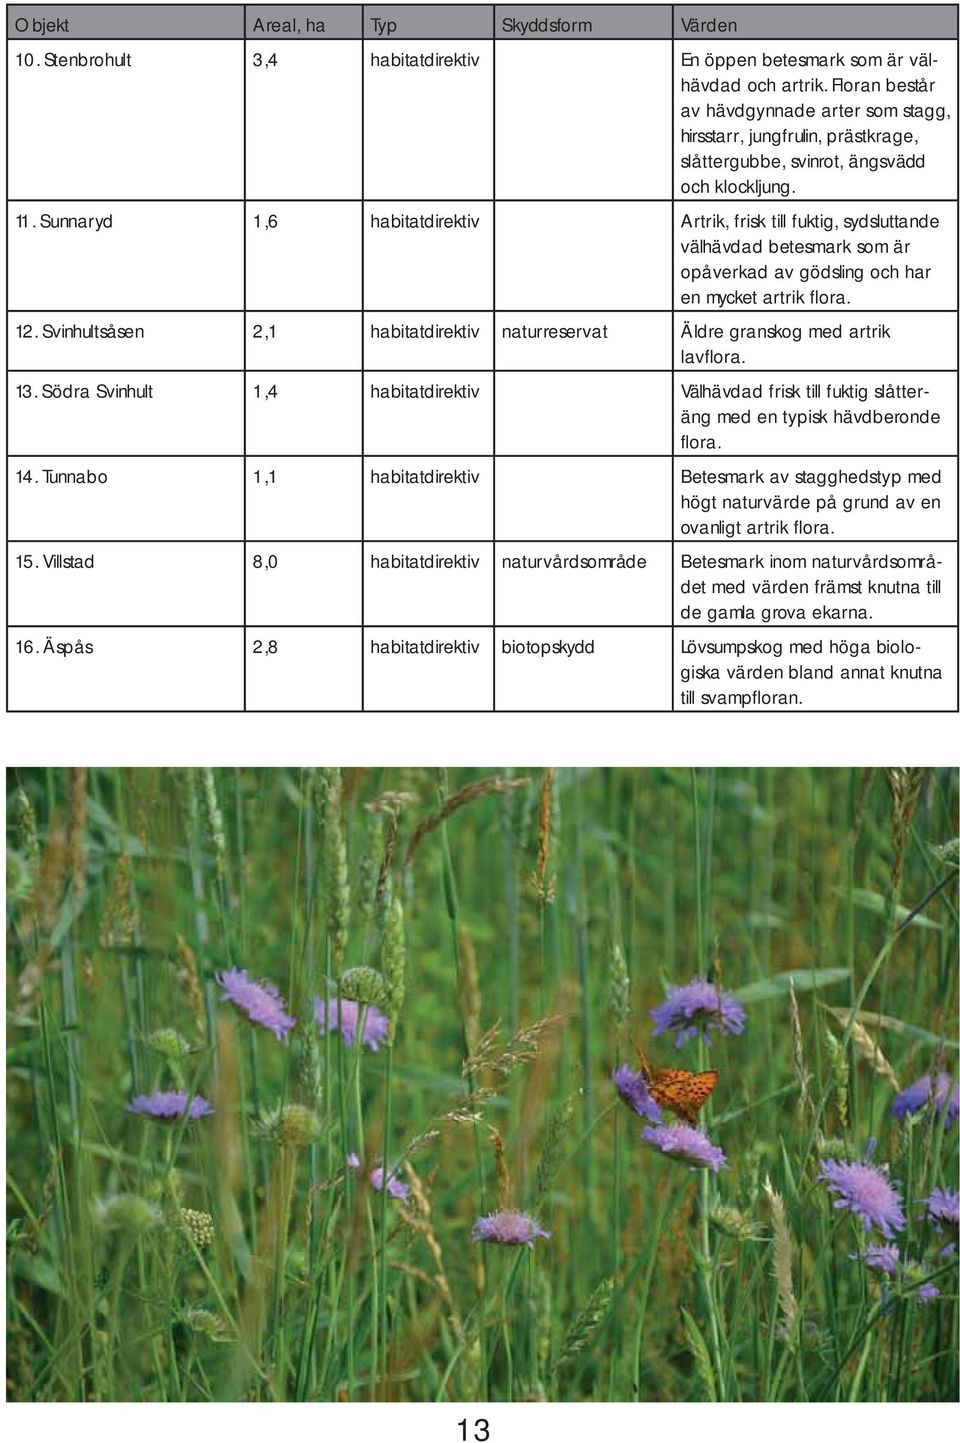 Sunnaryd 1,6 habitatdirektiv Artrik, frisk till fuktig, sydsluttande välhävdad betesmark som är opåverkad av gödsling och har en mycket artrik flora. 12.